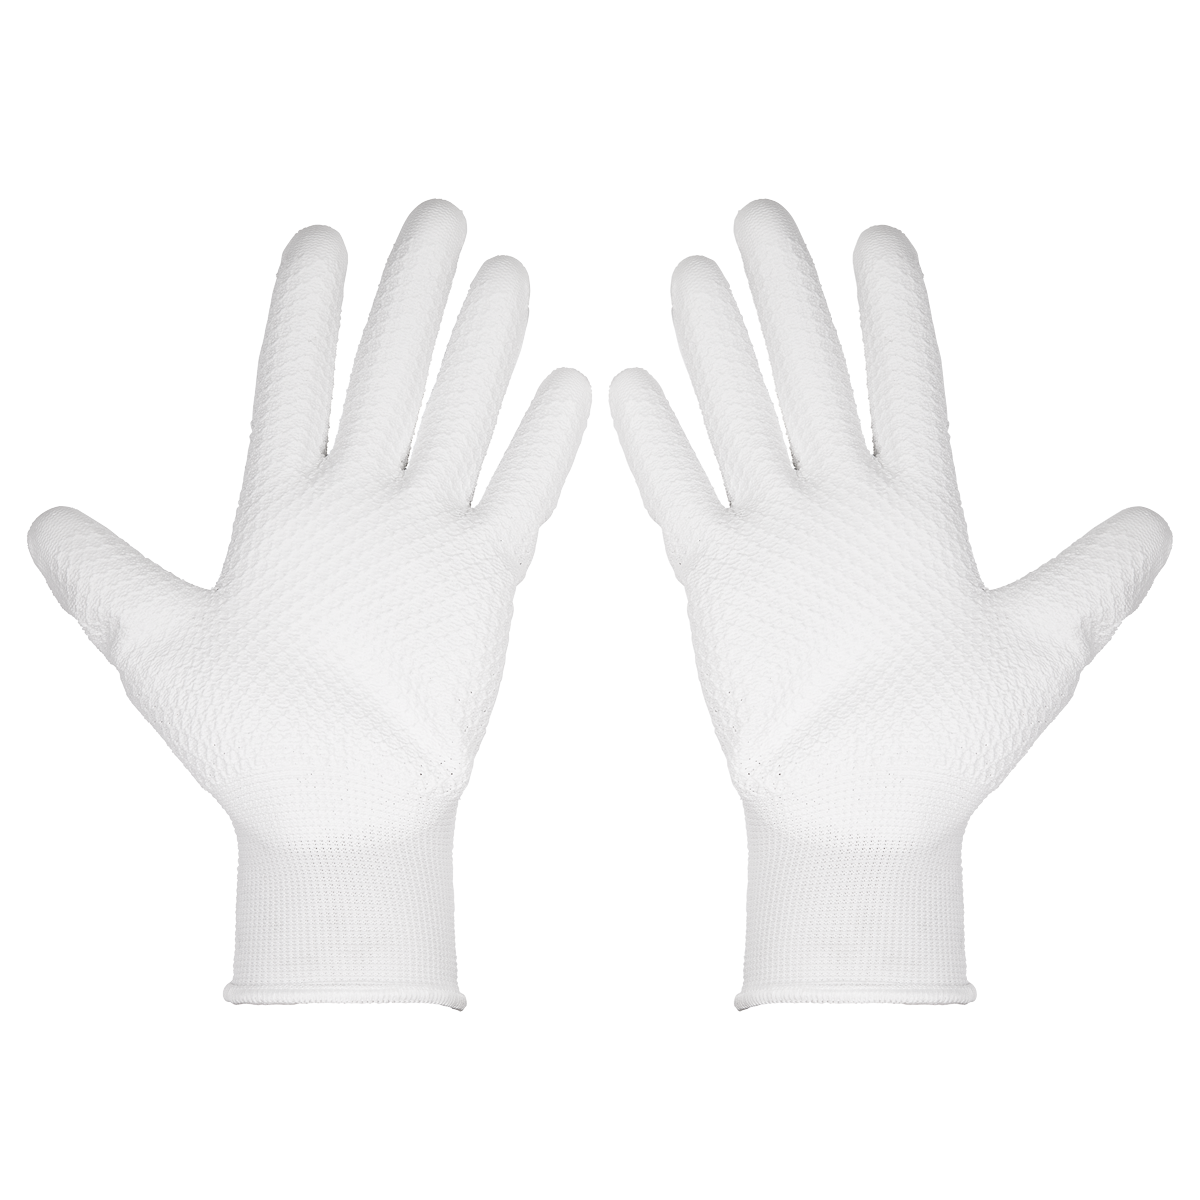 White Precision Grip Gloves – Pair